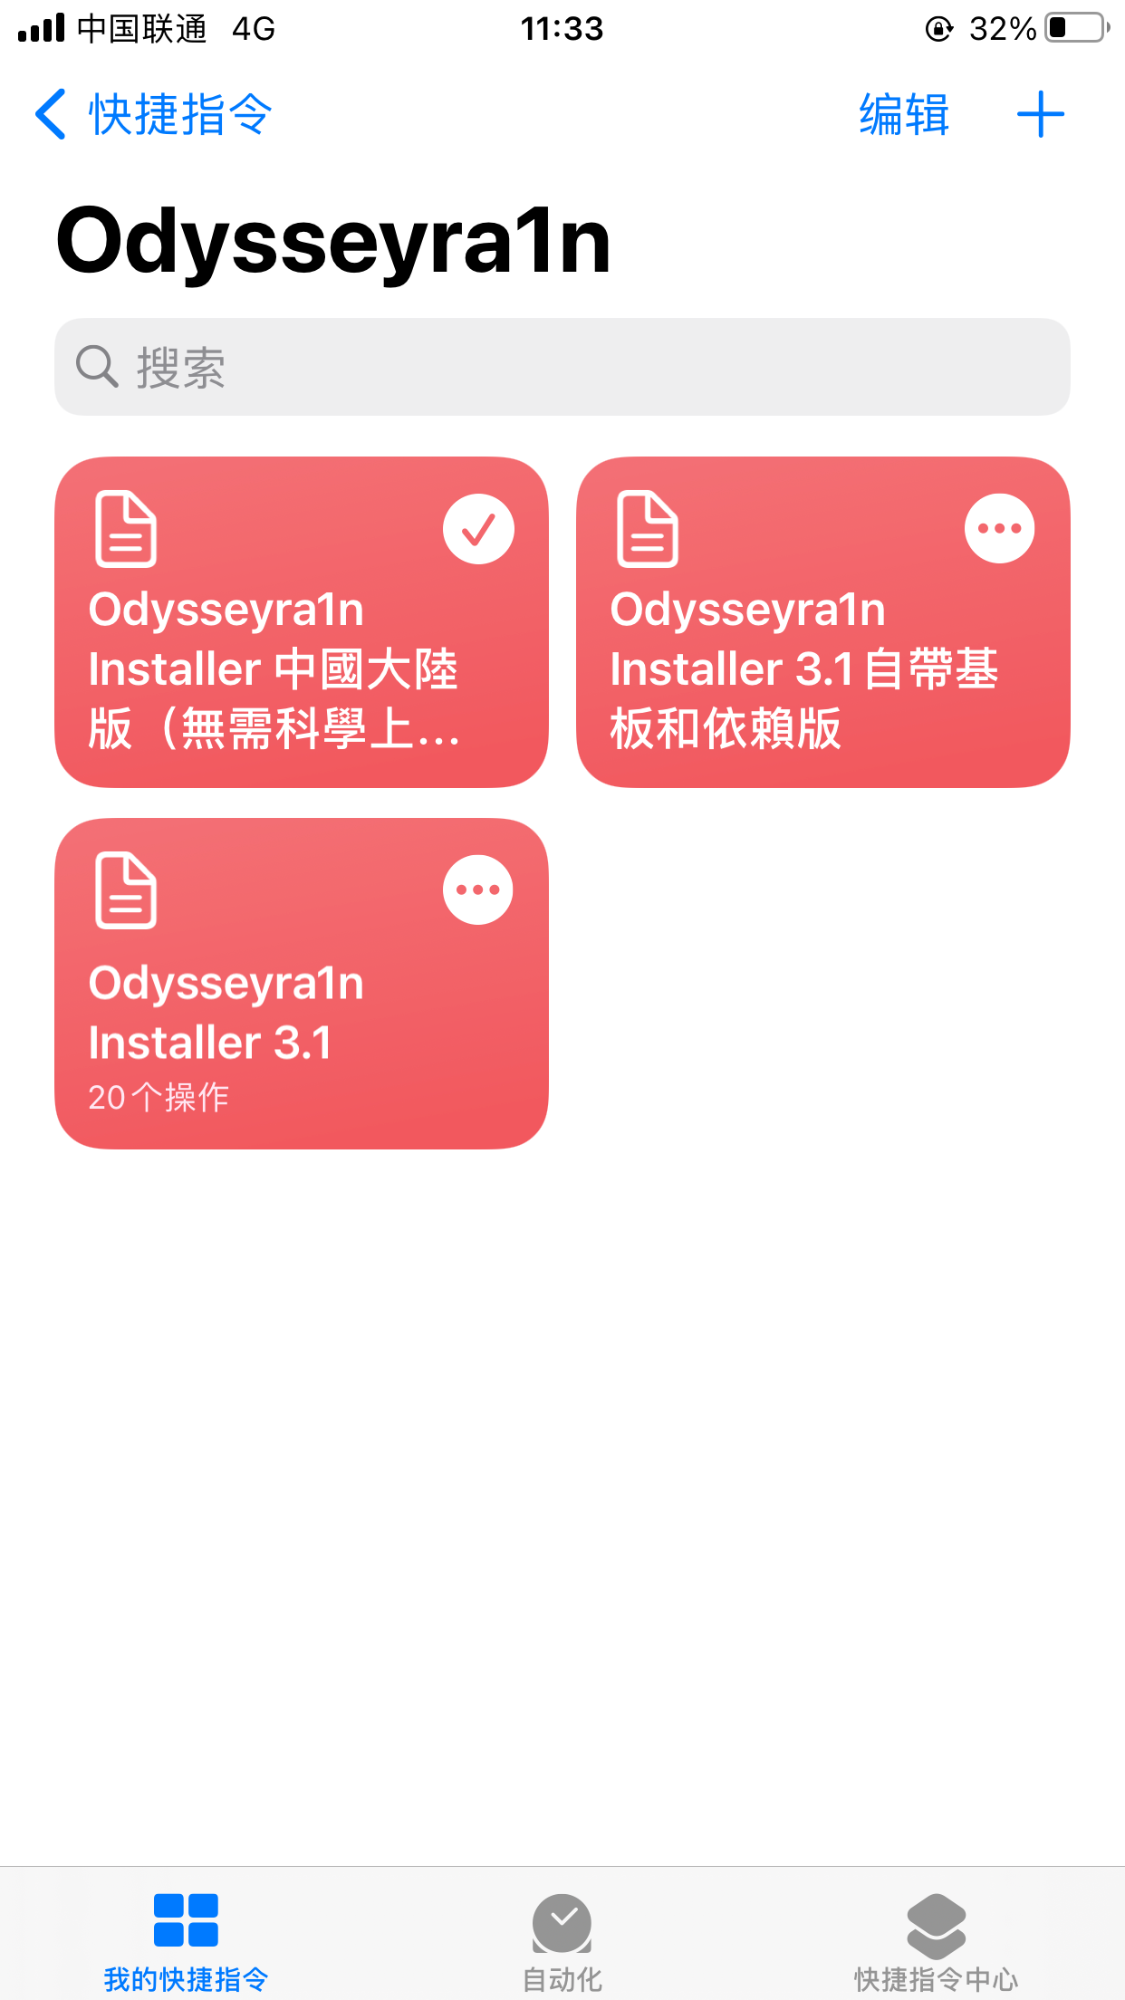 捷径安装 Odysseyra1n for iOS 12 - 14 - 图12